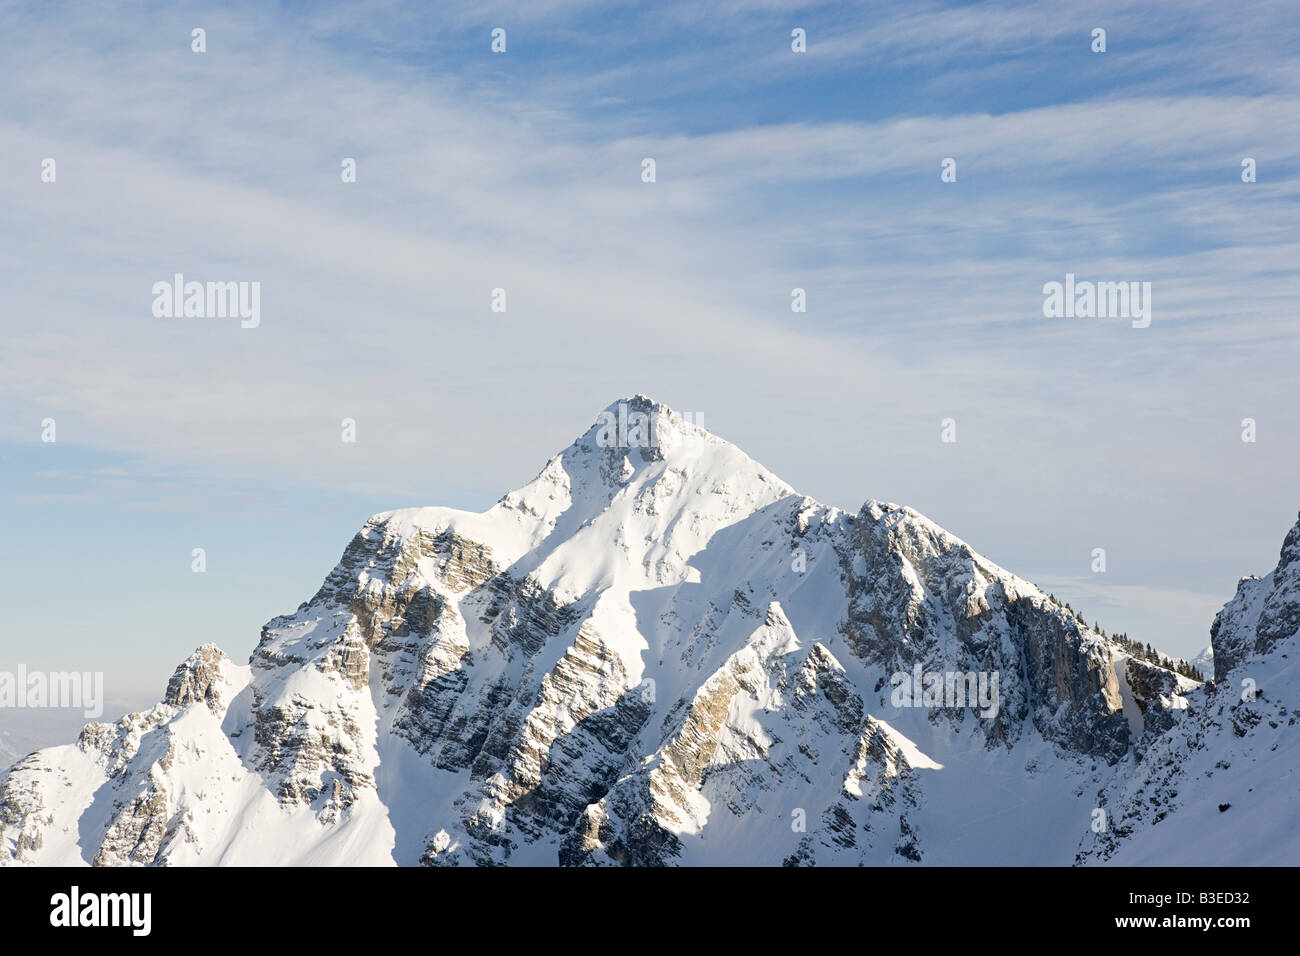 A mountain peak Stock Photo